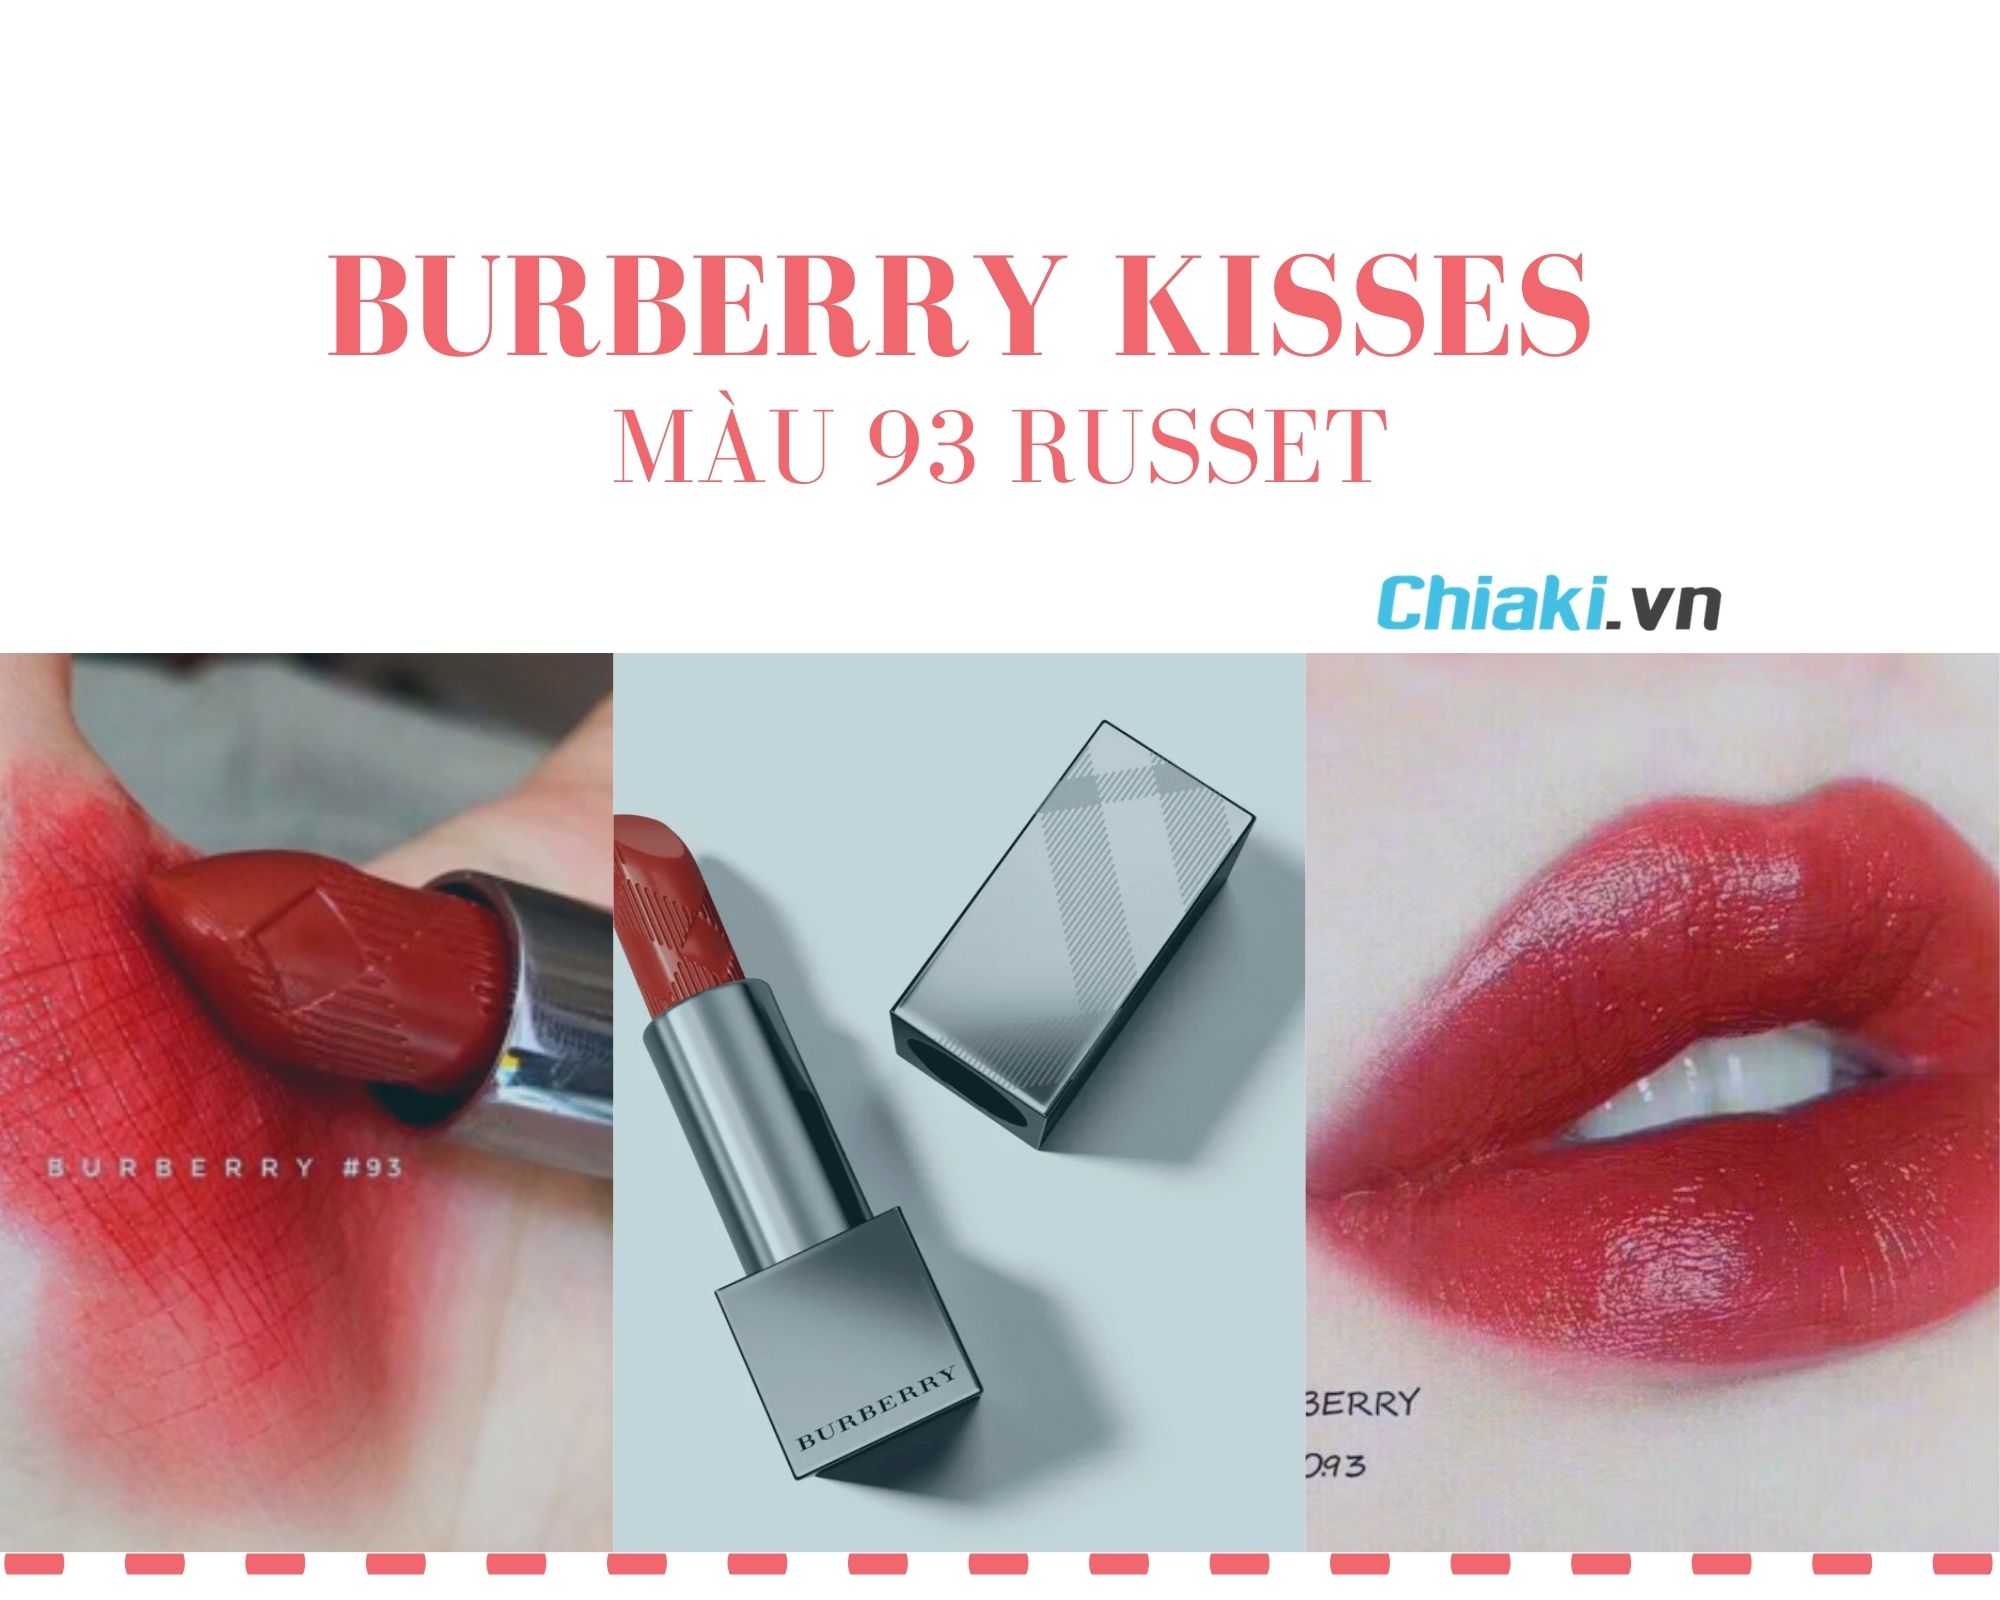 Burberry Kisses 93 - color son đỏ hỏn tôn da